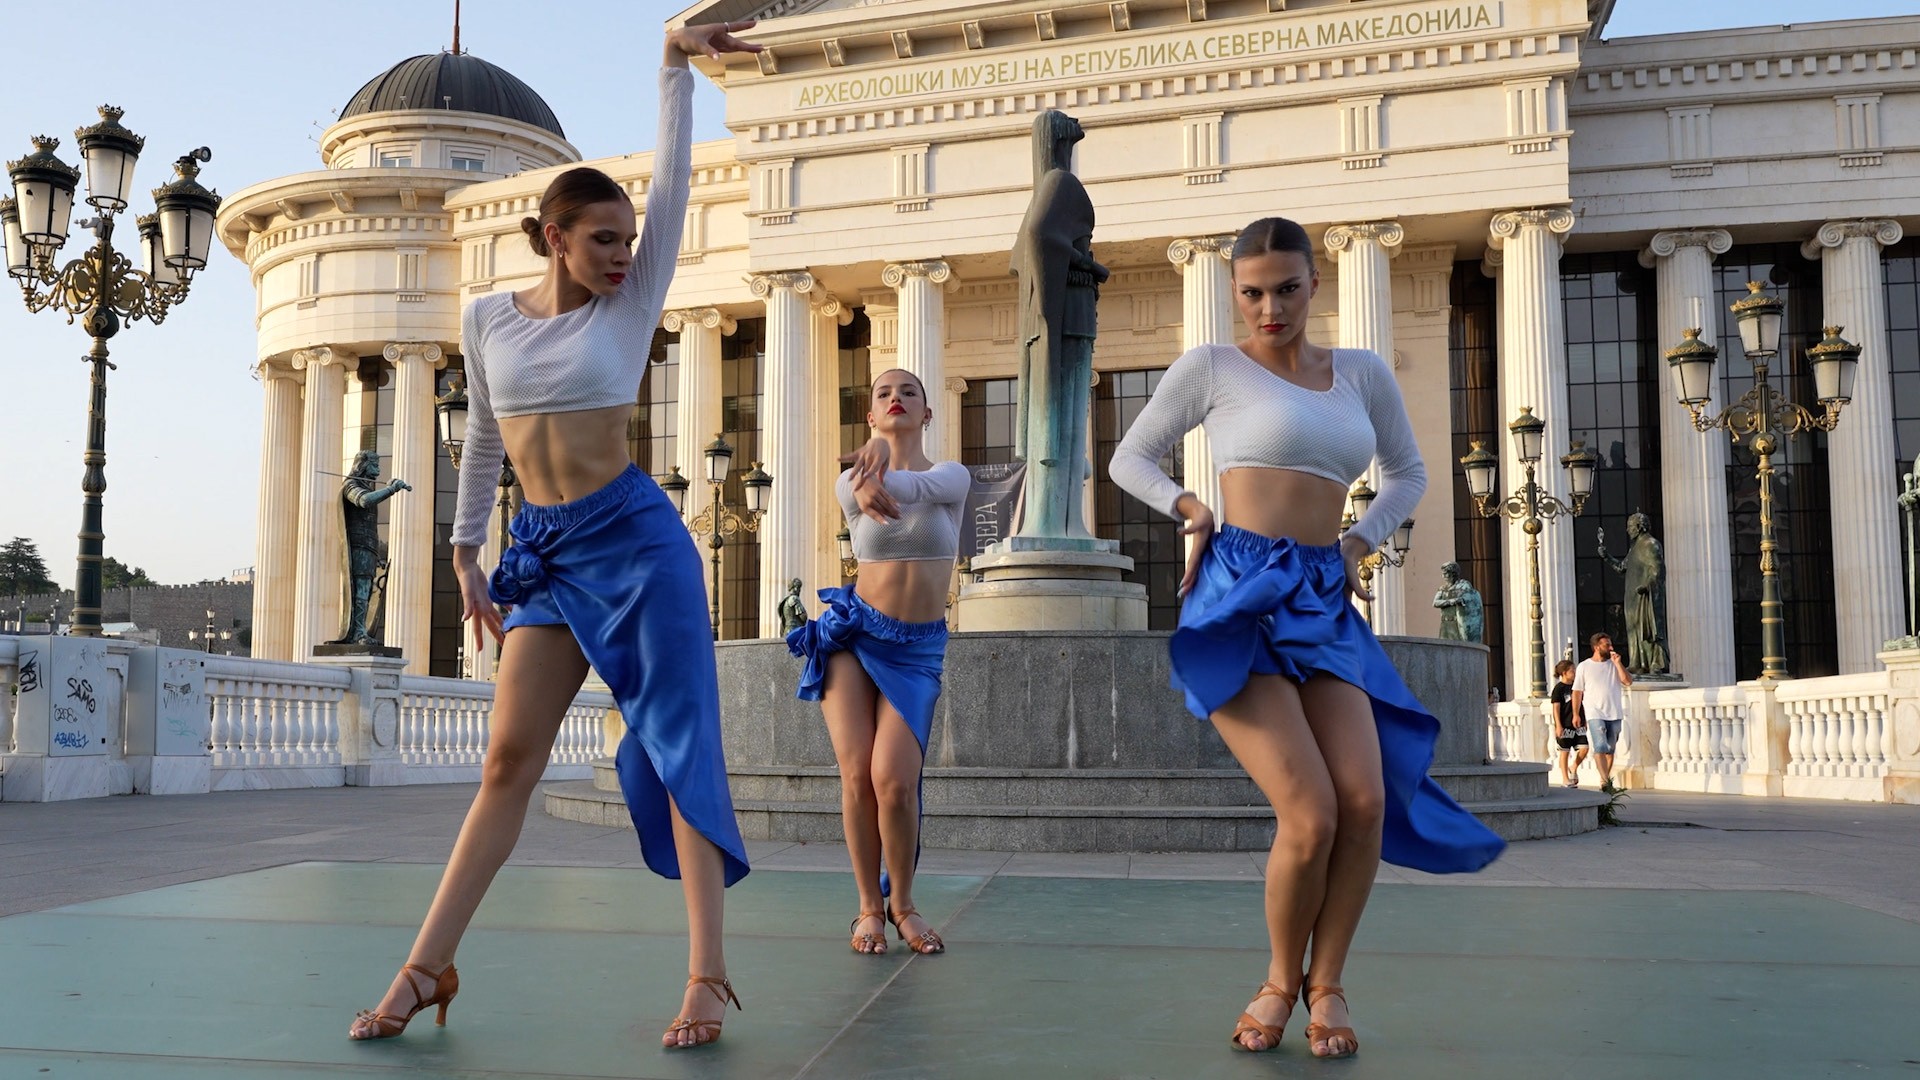 Колку латино танцот е интересен во Македонија?